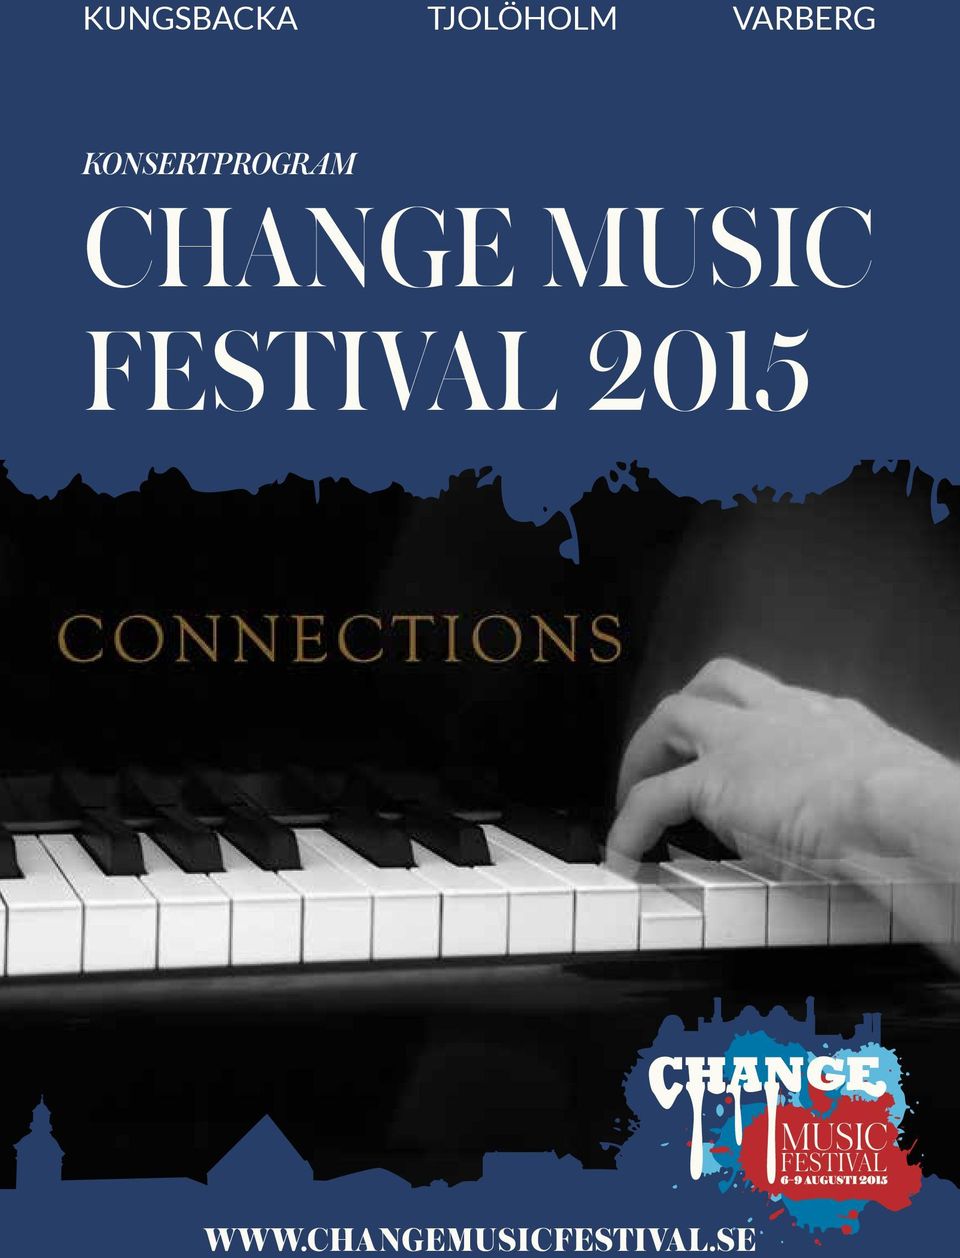 CHANGE MUSIC FESTIVAL 2015